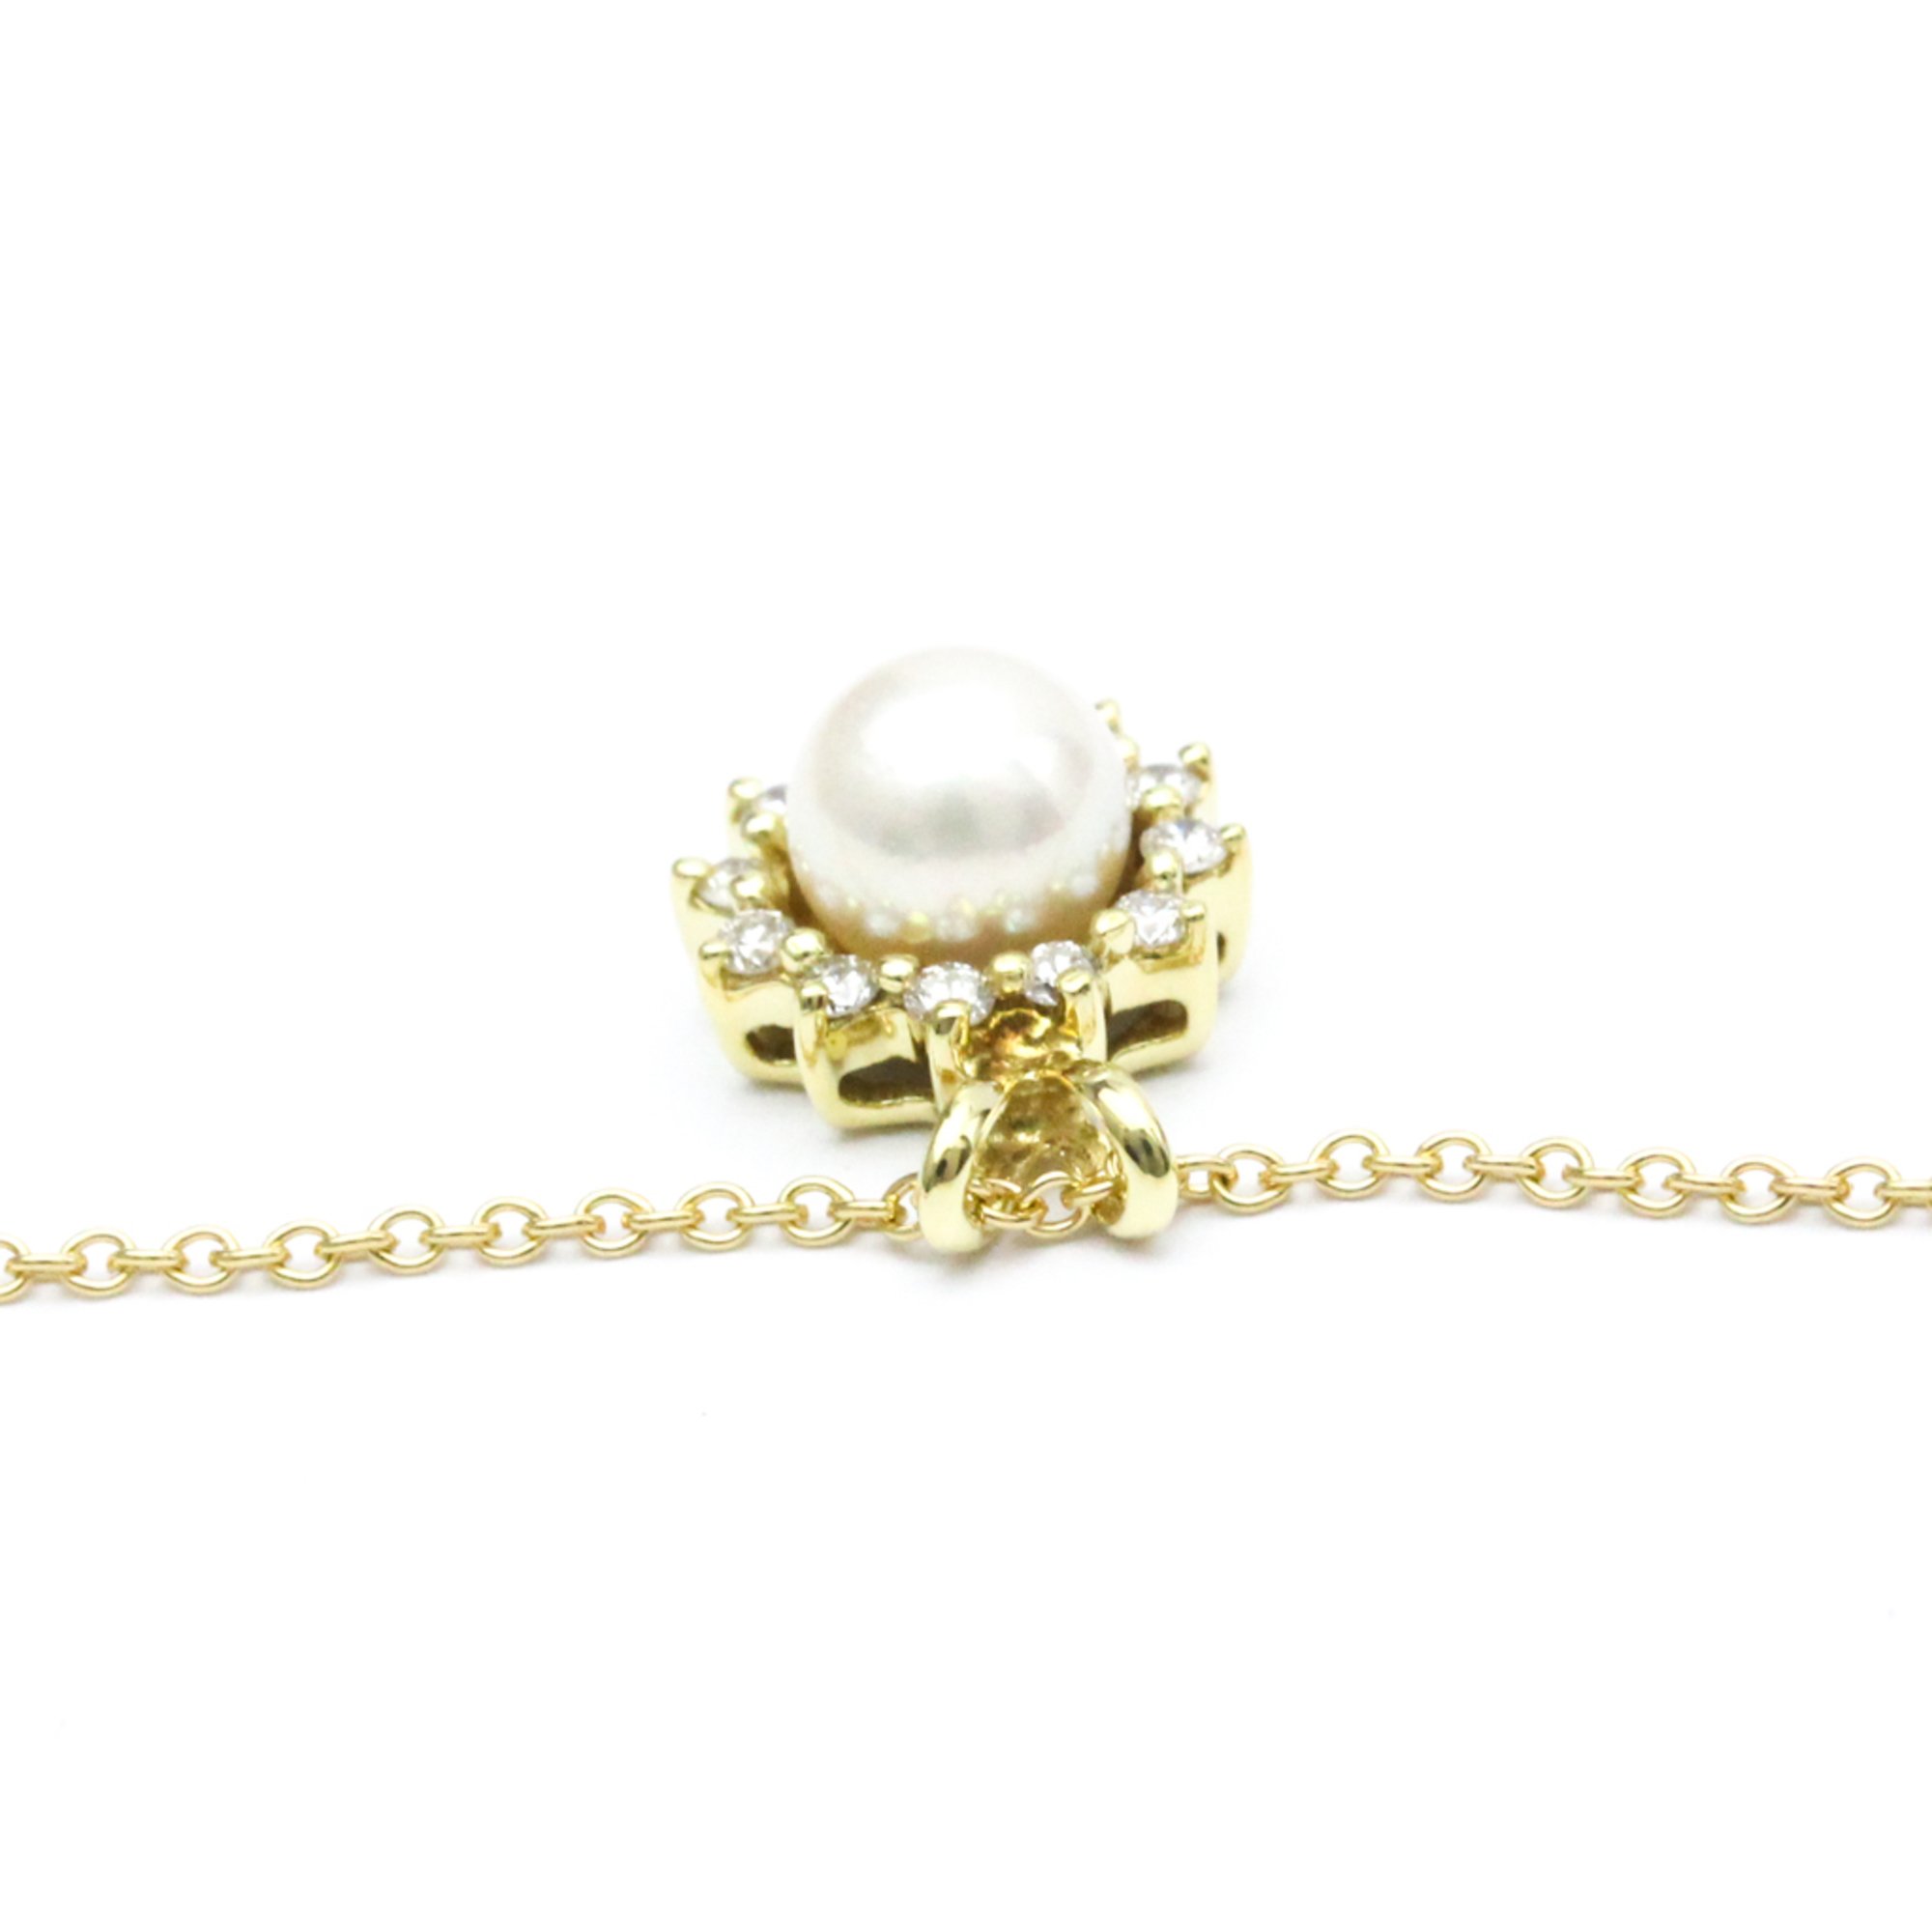 ティファニー(Tiffany) K18イエローゴールド(K18YG) ダイヤモンド,真珠 メンズ,レディース ファッション ペンダントネックレス  (ゴールド) パール ダイヤモンド ネックレス | eLADY Globazone